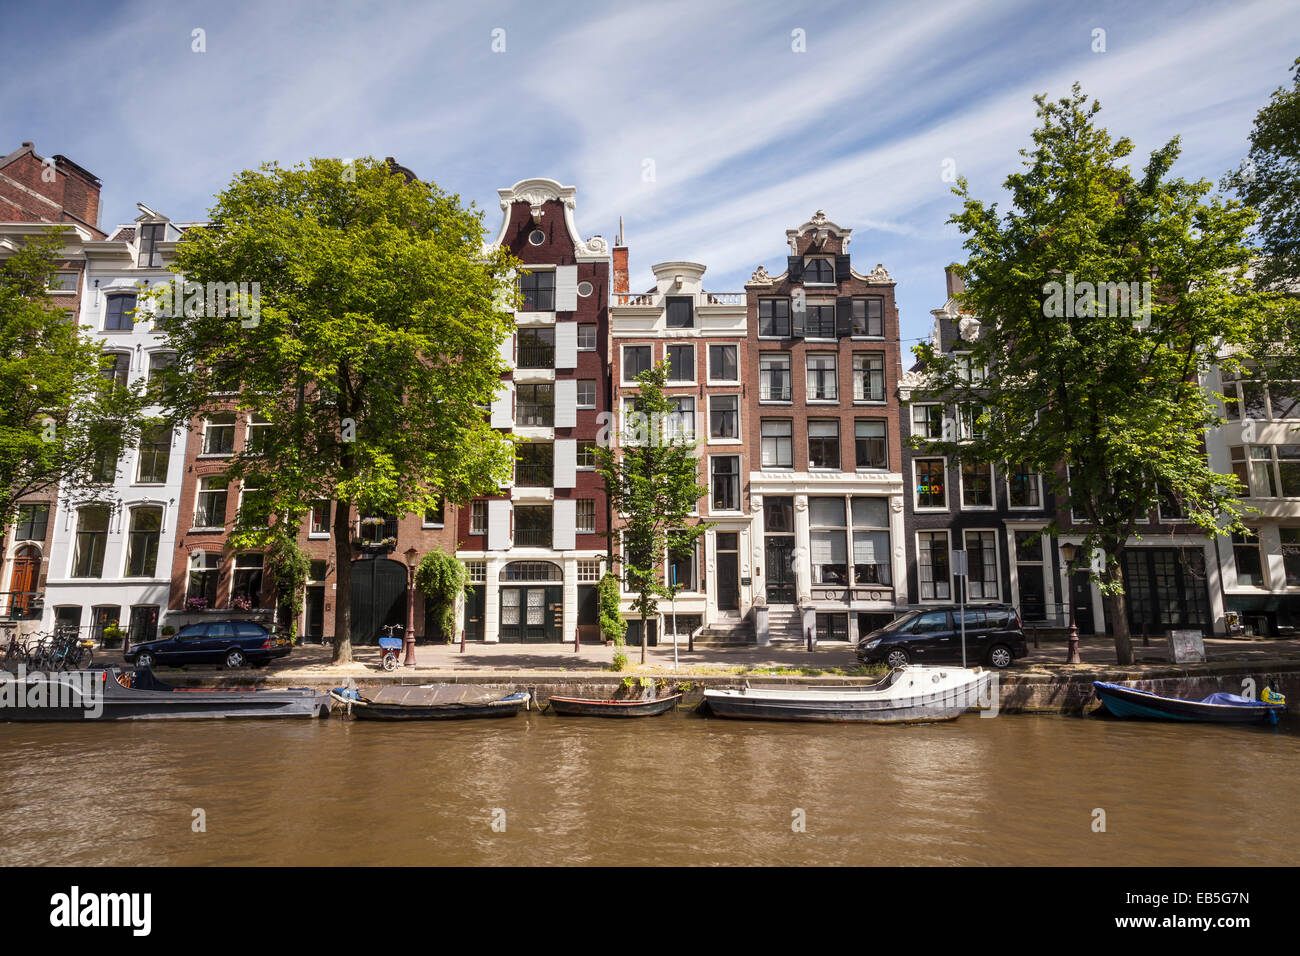 Un canale di Amsterdam, Paesi Bassi. I canali del centro di Amsterdam è stato designato un patrimonio mondiale Siye dall'UNESCO. Foto Stock